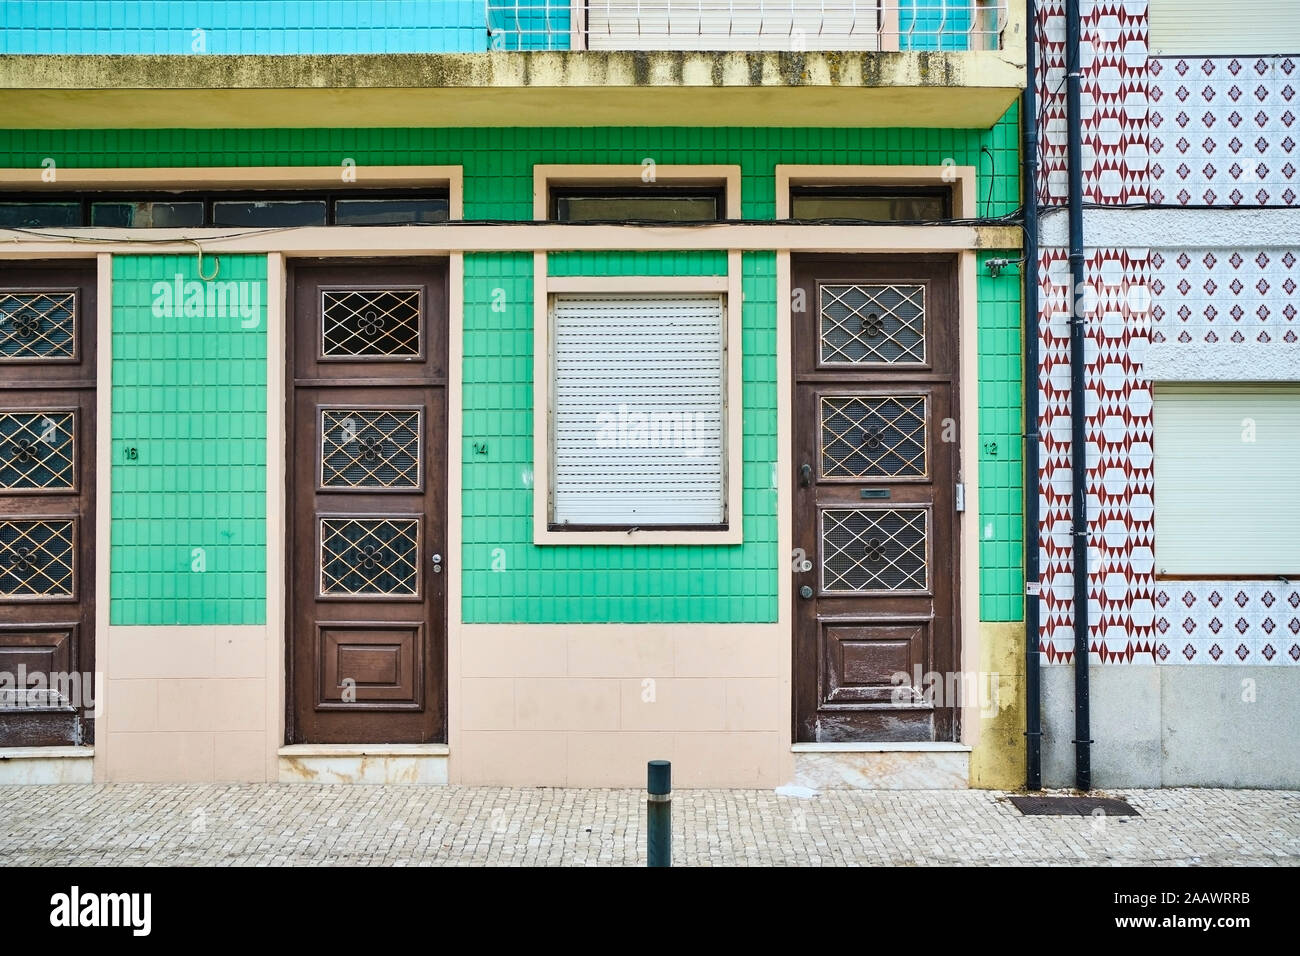 Portugal, Porto, Afurada, vista frontal de casas adornadas visto durante el día Foto de stock